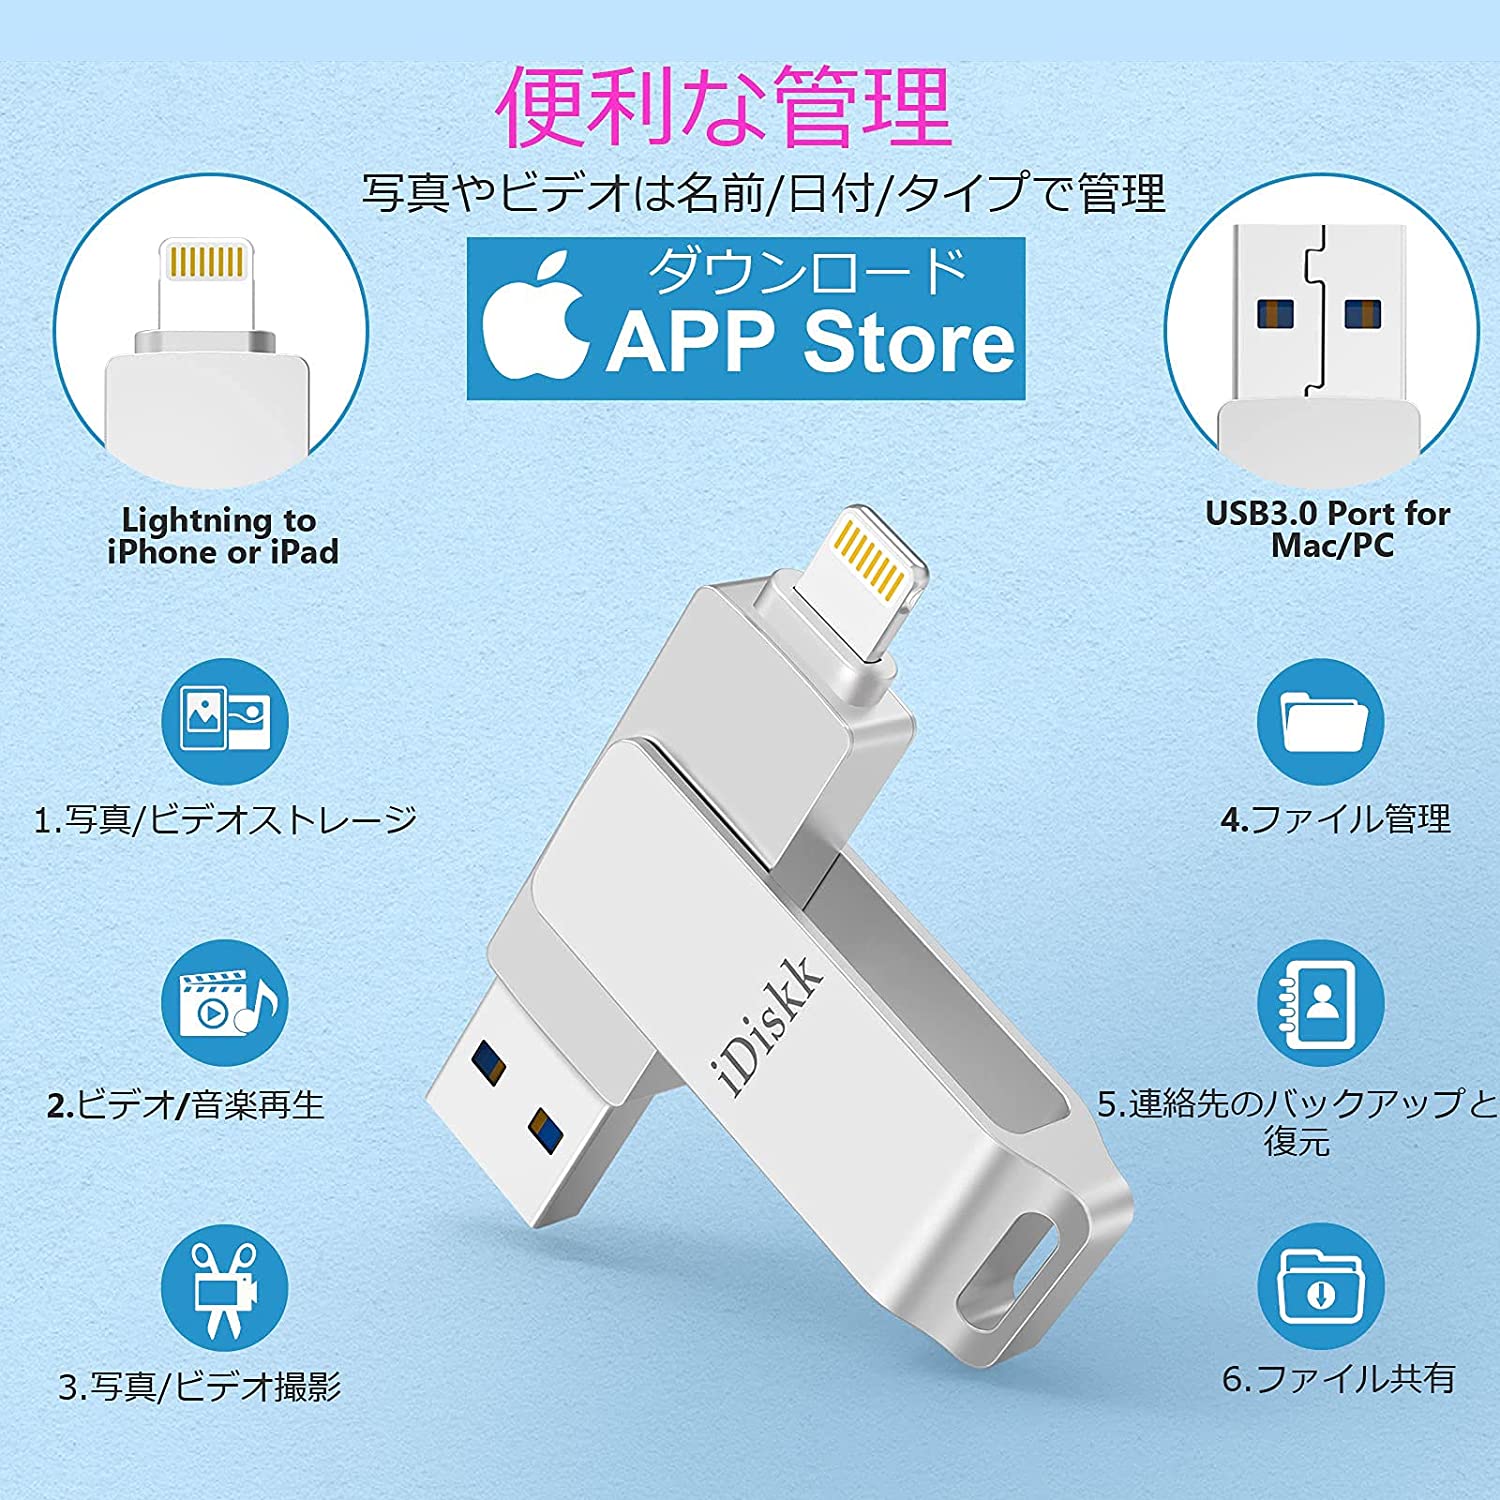 激安 バックアップ USB3.0 Lightning iPad iPhone MFI認証 apple認証 256GB USBメモリ コピー 256GB  iDiskk 128GB 64GB 外部メモリ - 64GB - hlt.no